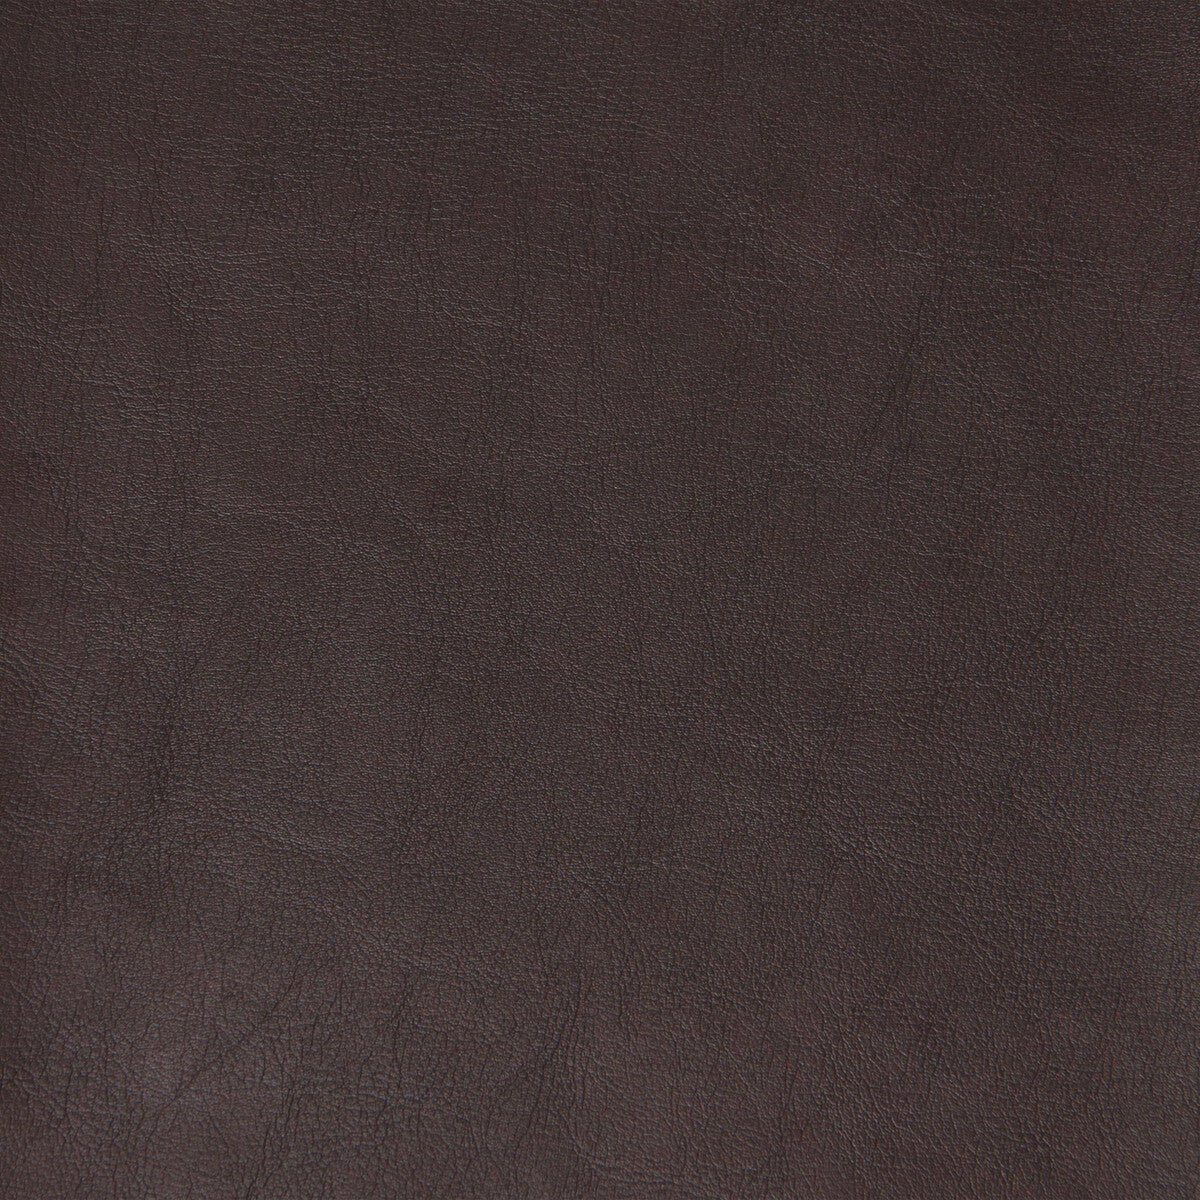 Kravet Design fabric in plato-6 color - pattern PLATO.6.0 - by Kravet Design